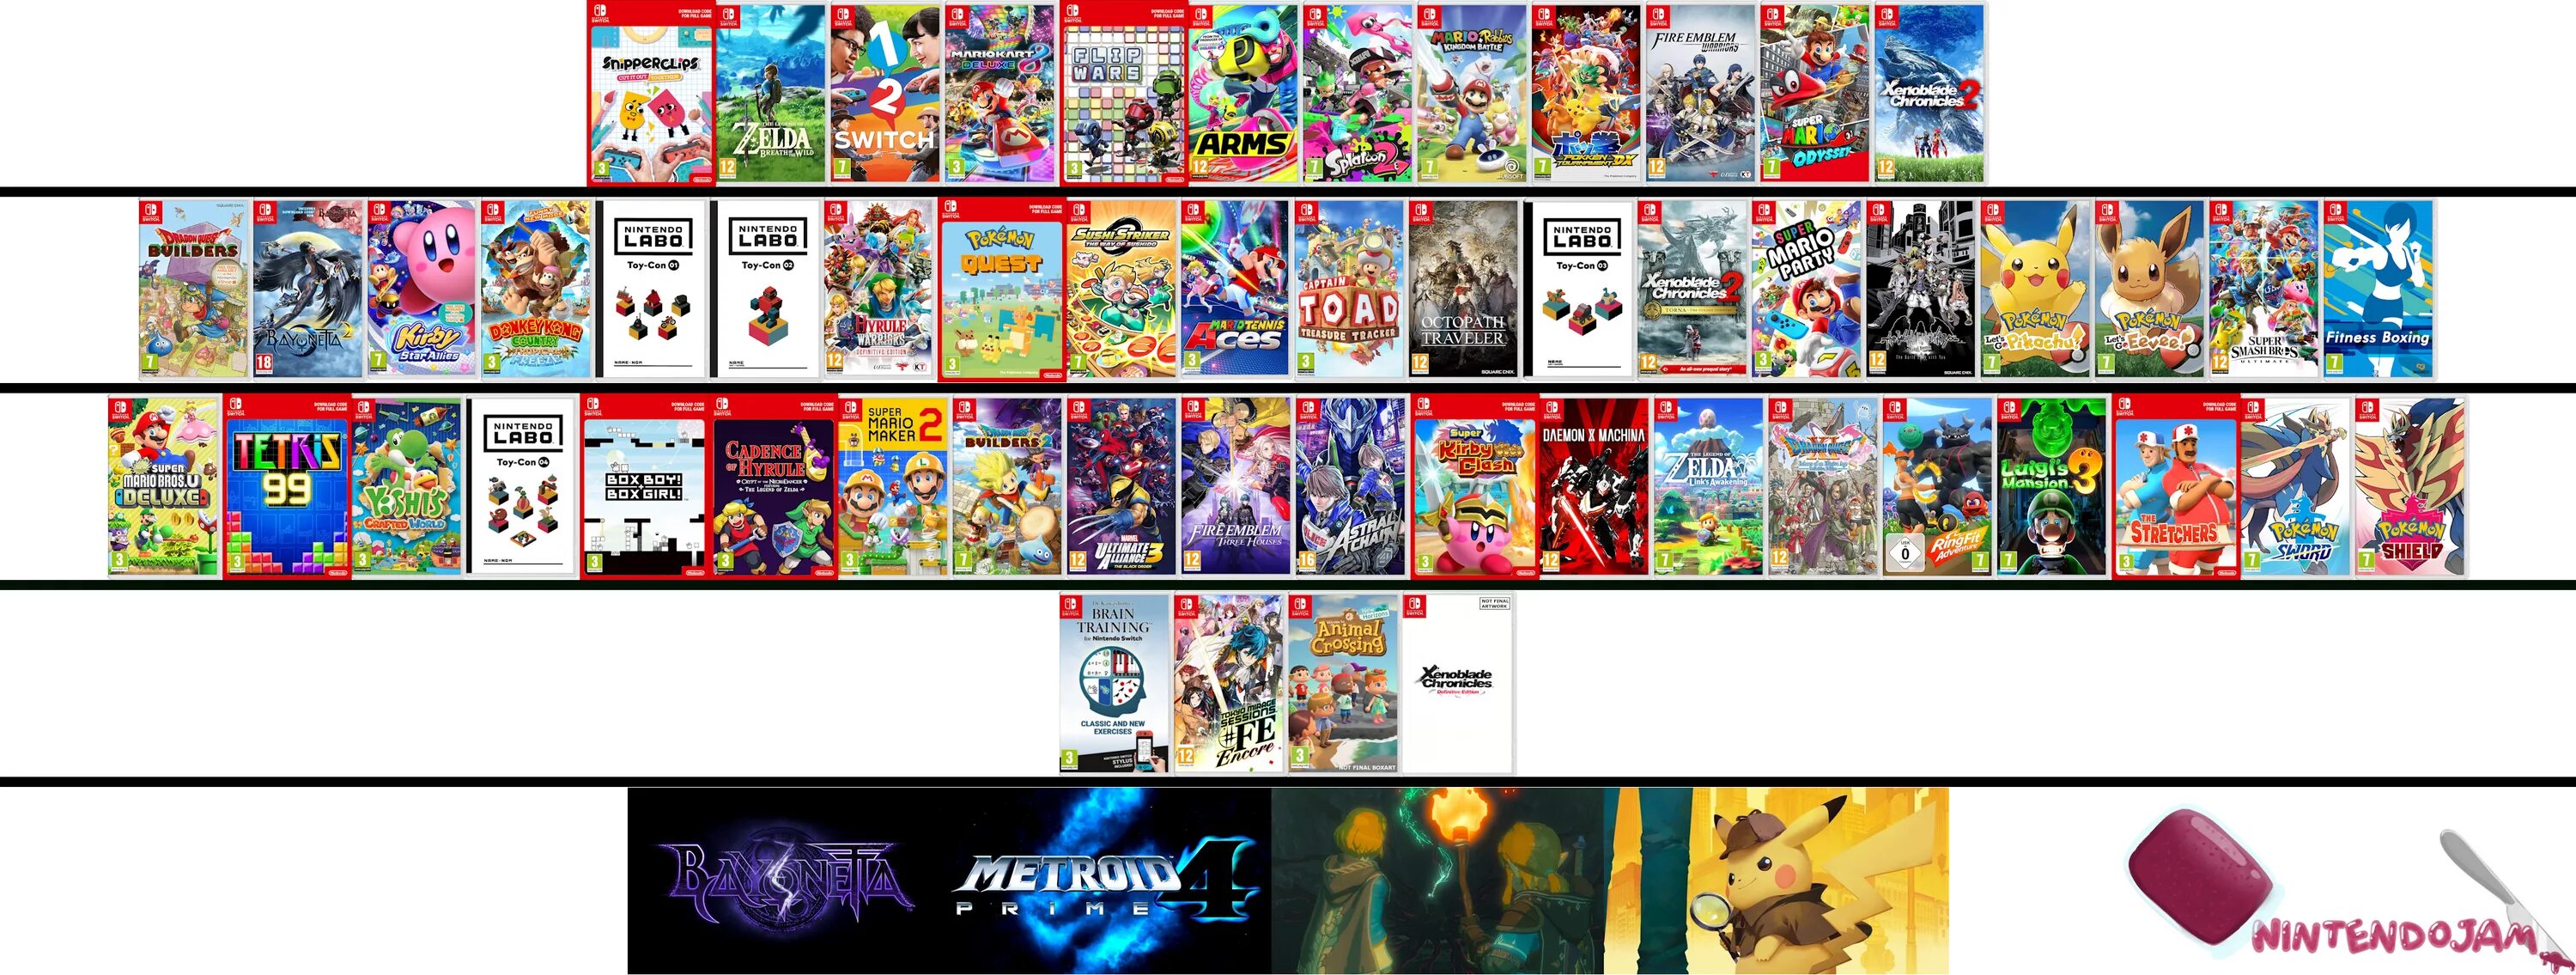 Нинтендо свитч игры список. Nintendo Switch games 2020. Нинтендо свитч персонажи. Лучшие игры для Nintendo Switch.